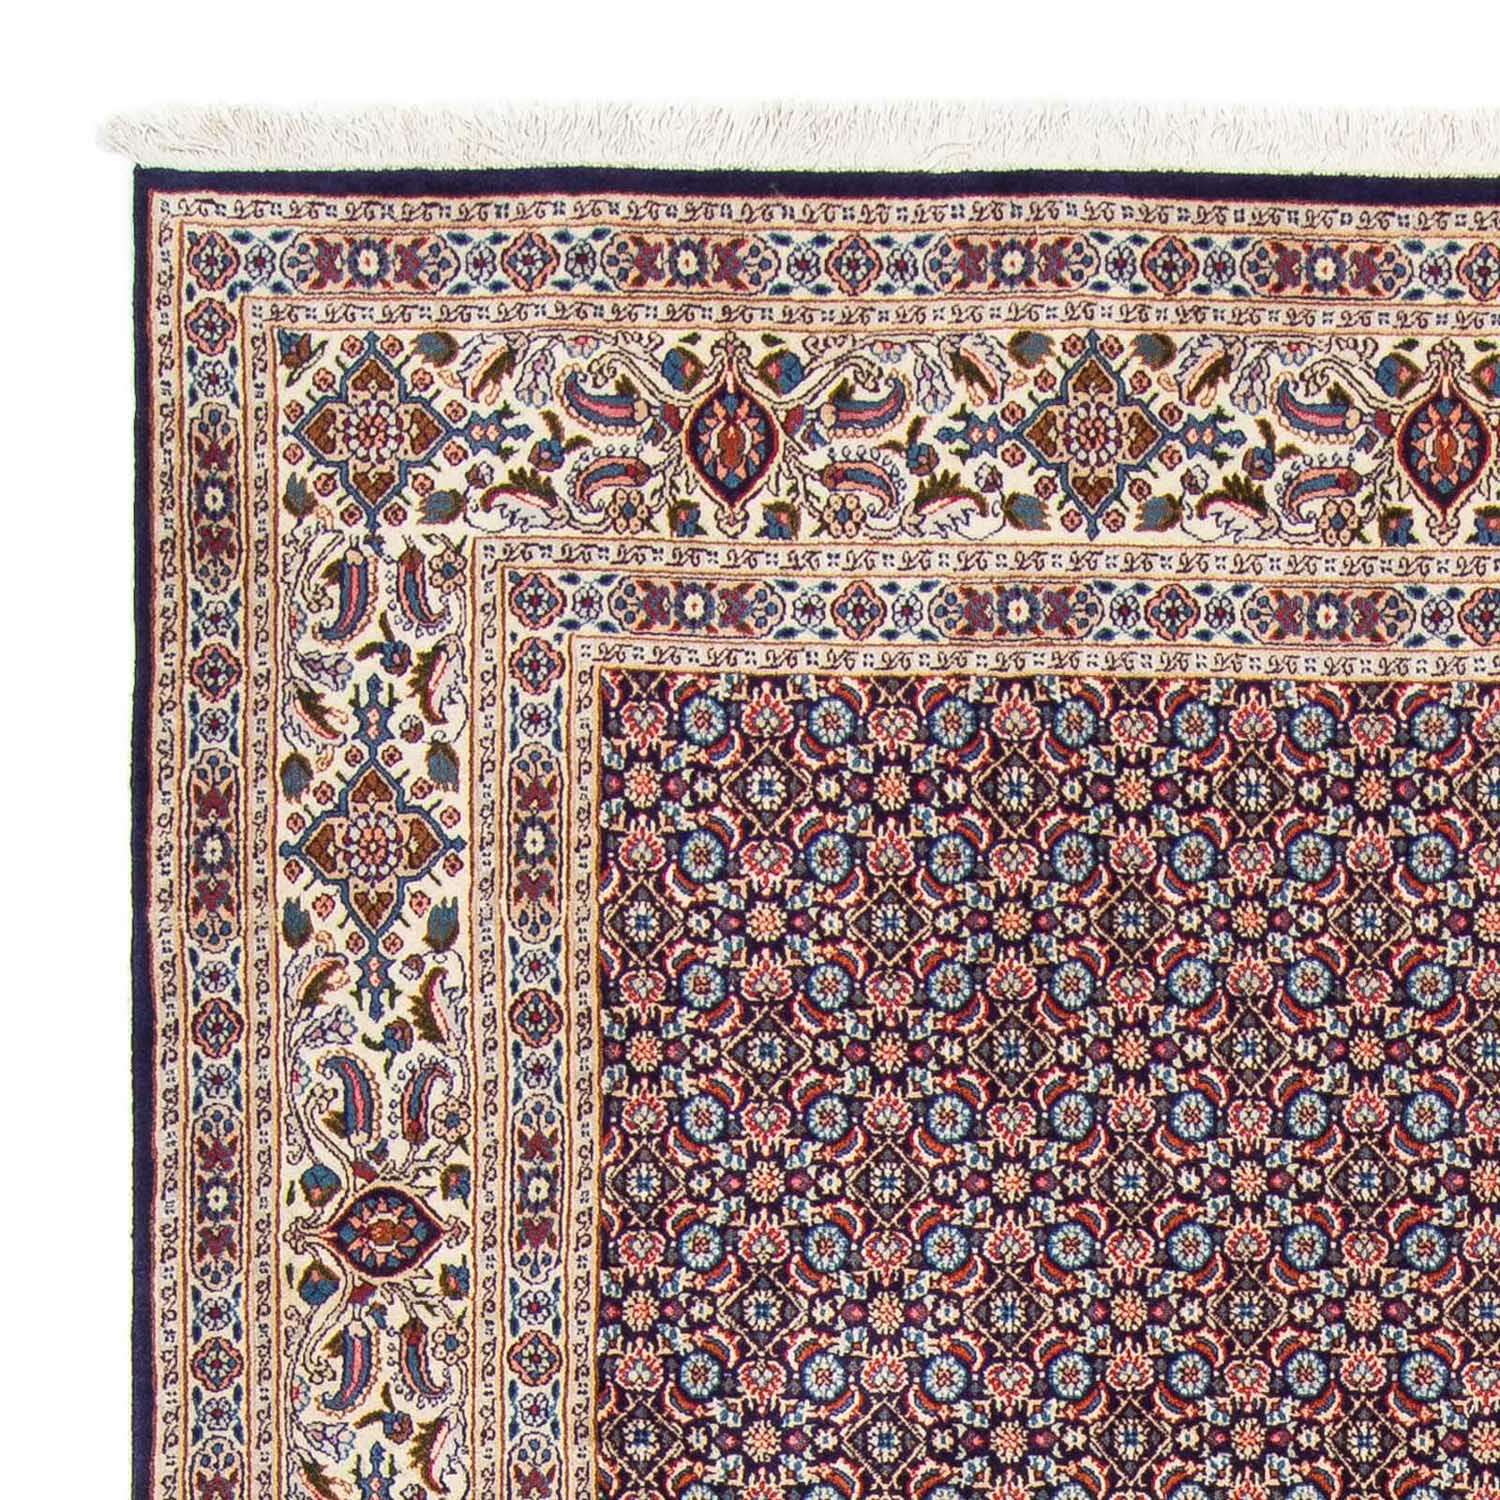 Dywan perski - Klasyczny - 298 x 202 cm - ciemnoniebieski